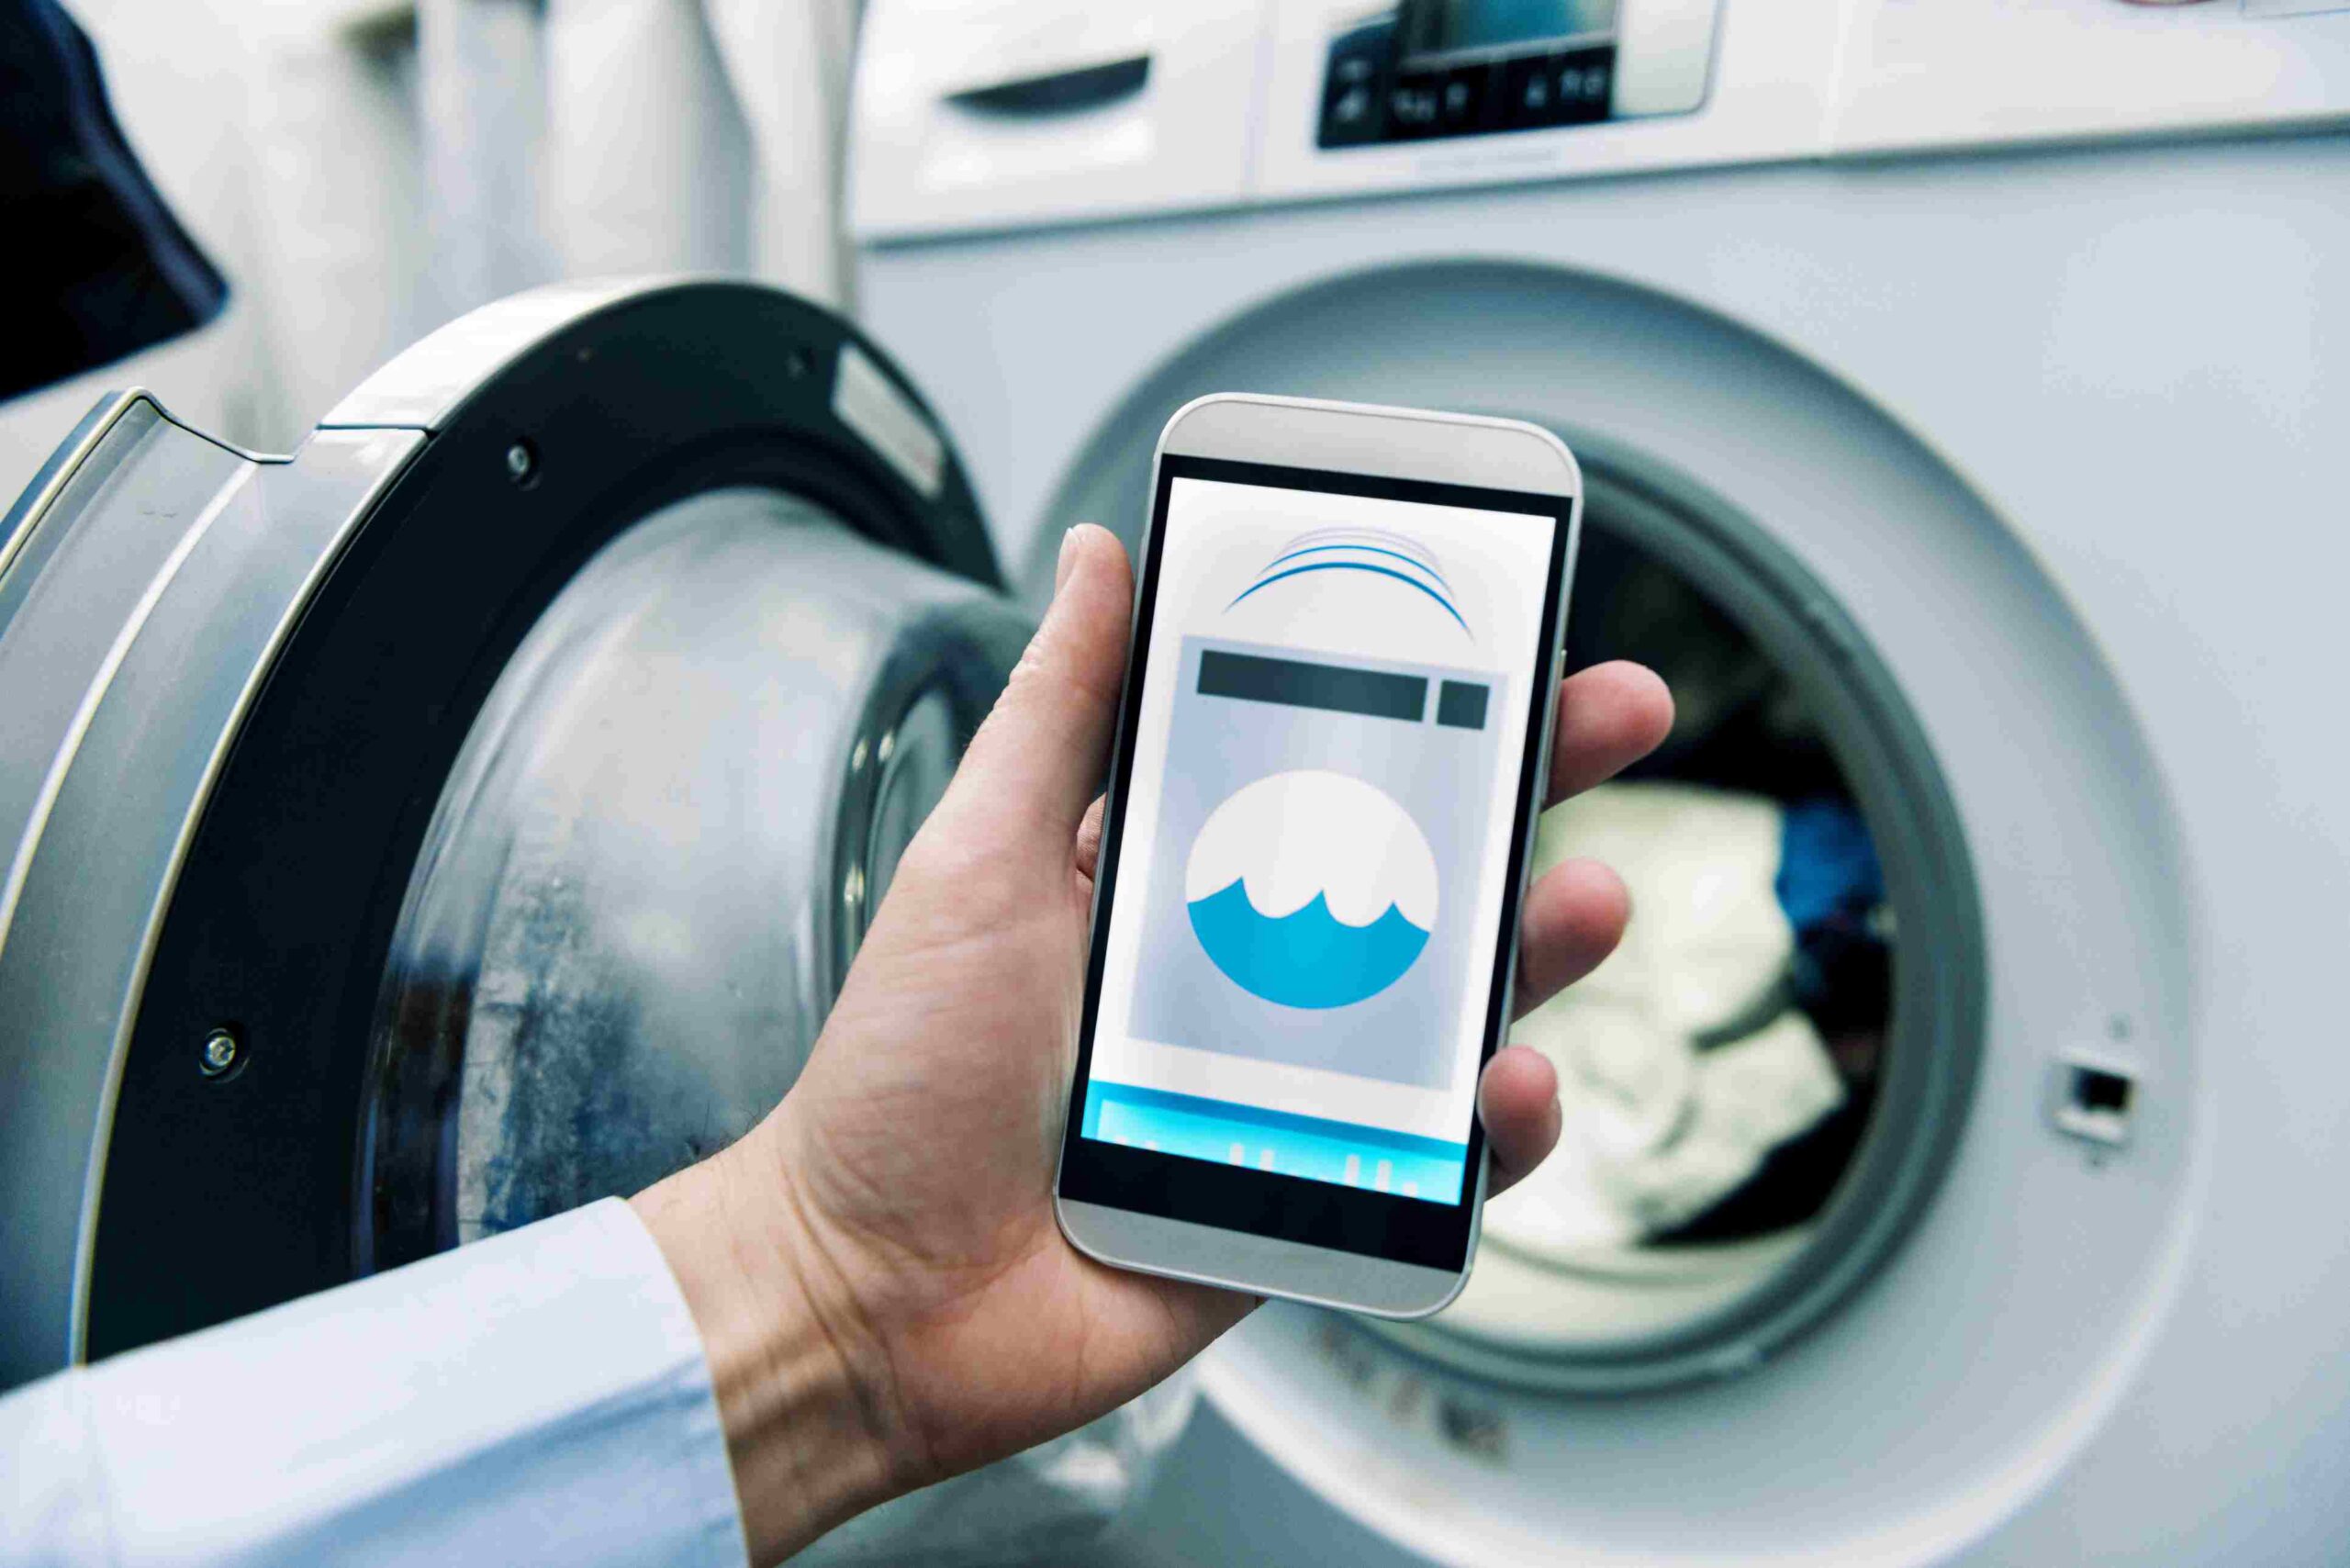 laundry app development company